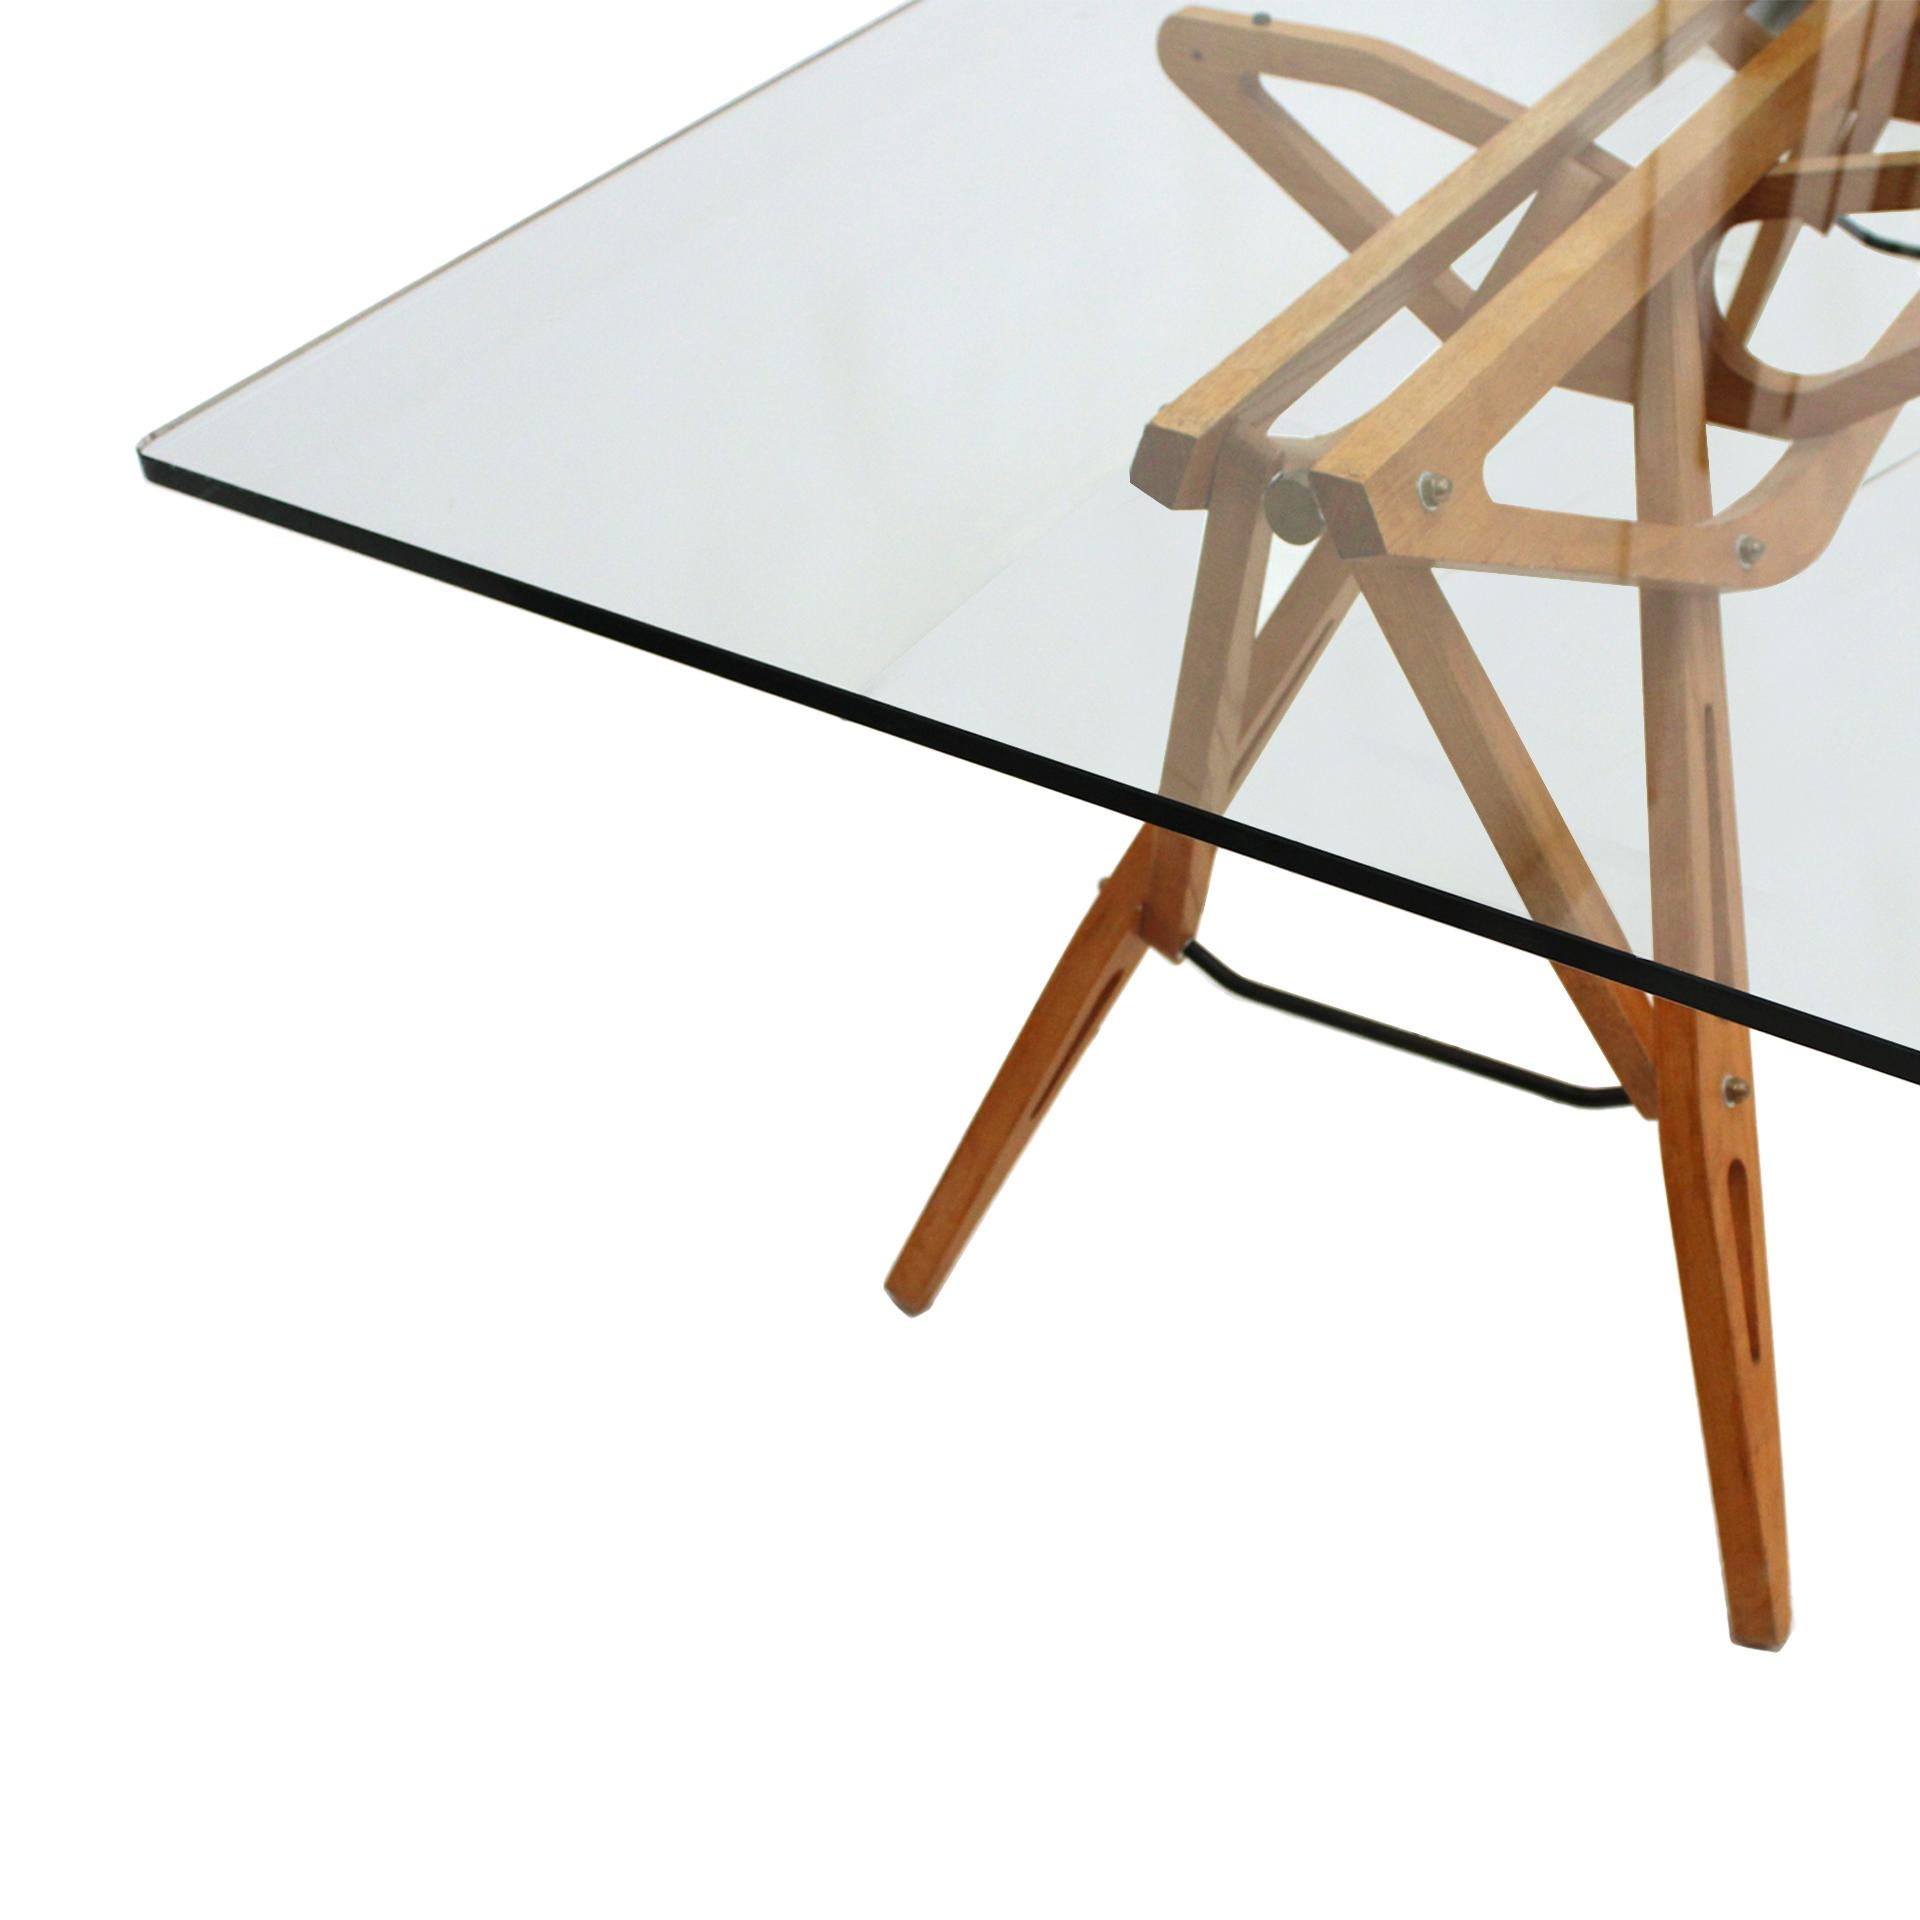 Prêt à être expédié. 

Table modulaire Vintage Reale conçue par Carlo Mollino. Fabriqué en bois de chêne, ce qui lui confère un aspect chaleureux et naturel. Le choix du bois de chêne souligne le caractère artisanal et la durabilité de la